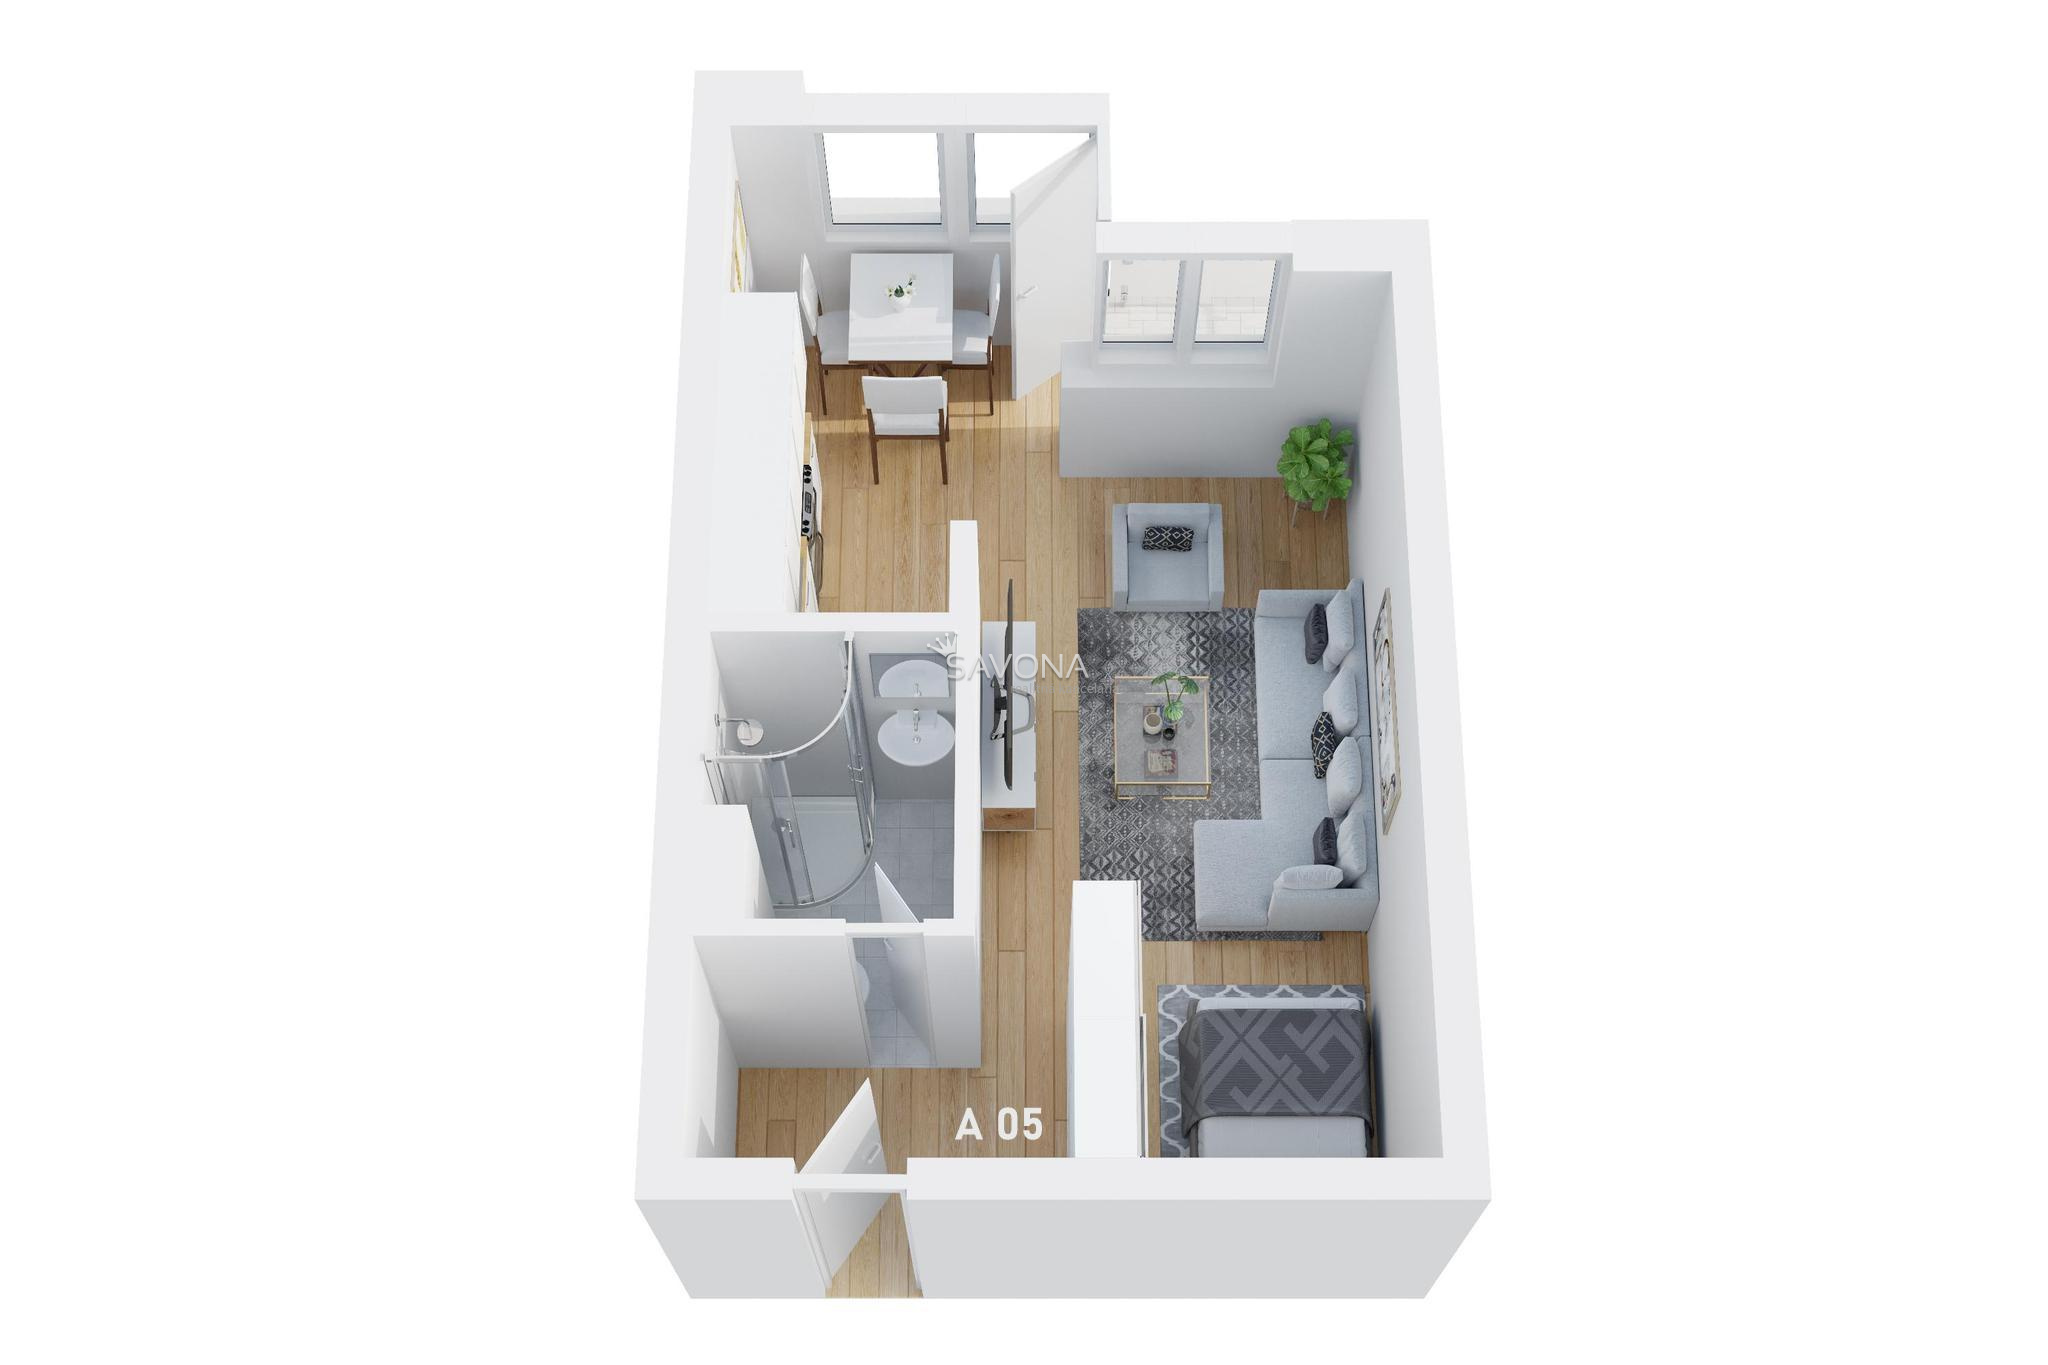 #napredaj 1 izbový byt | A 05 - 42 m2 – s výhľadom na TATRY